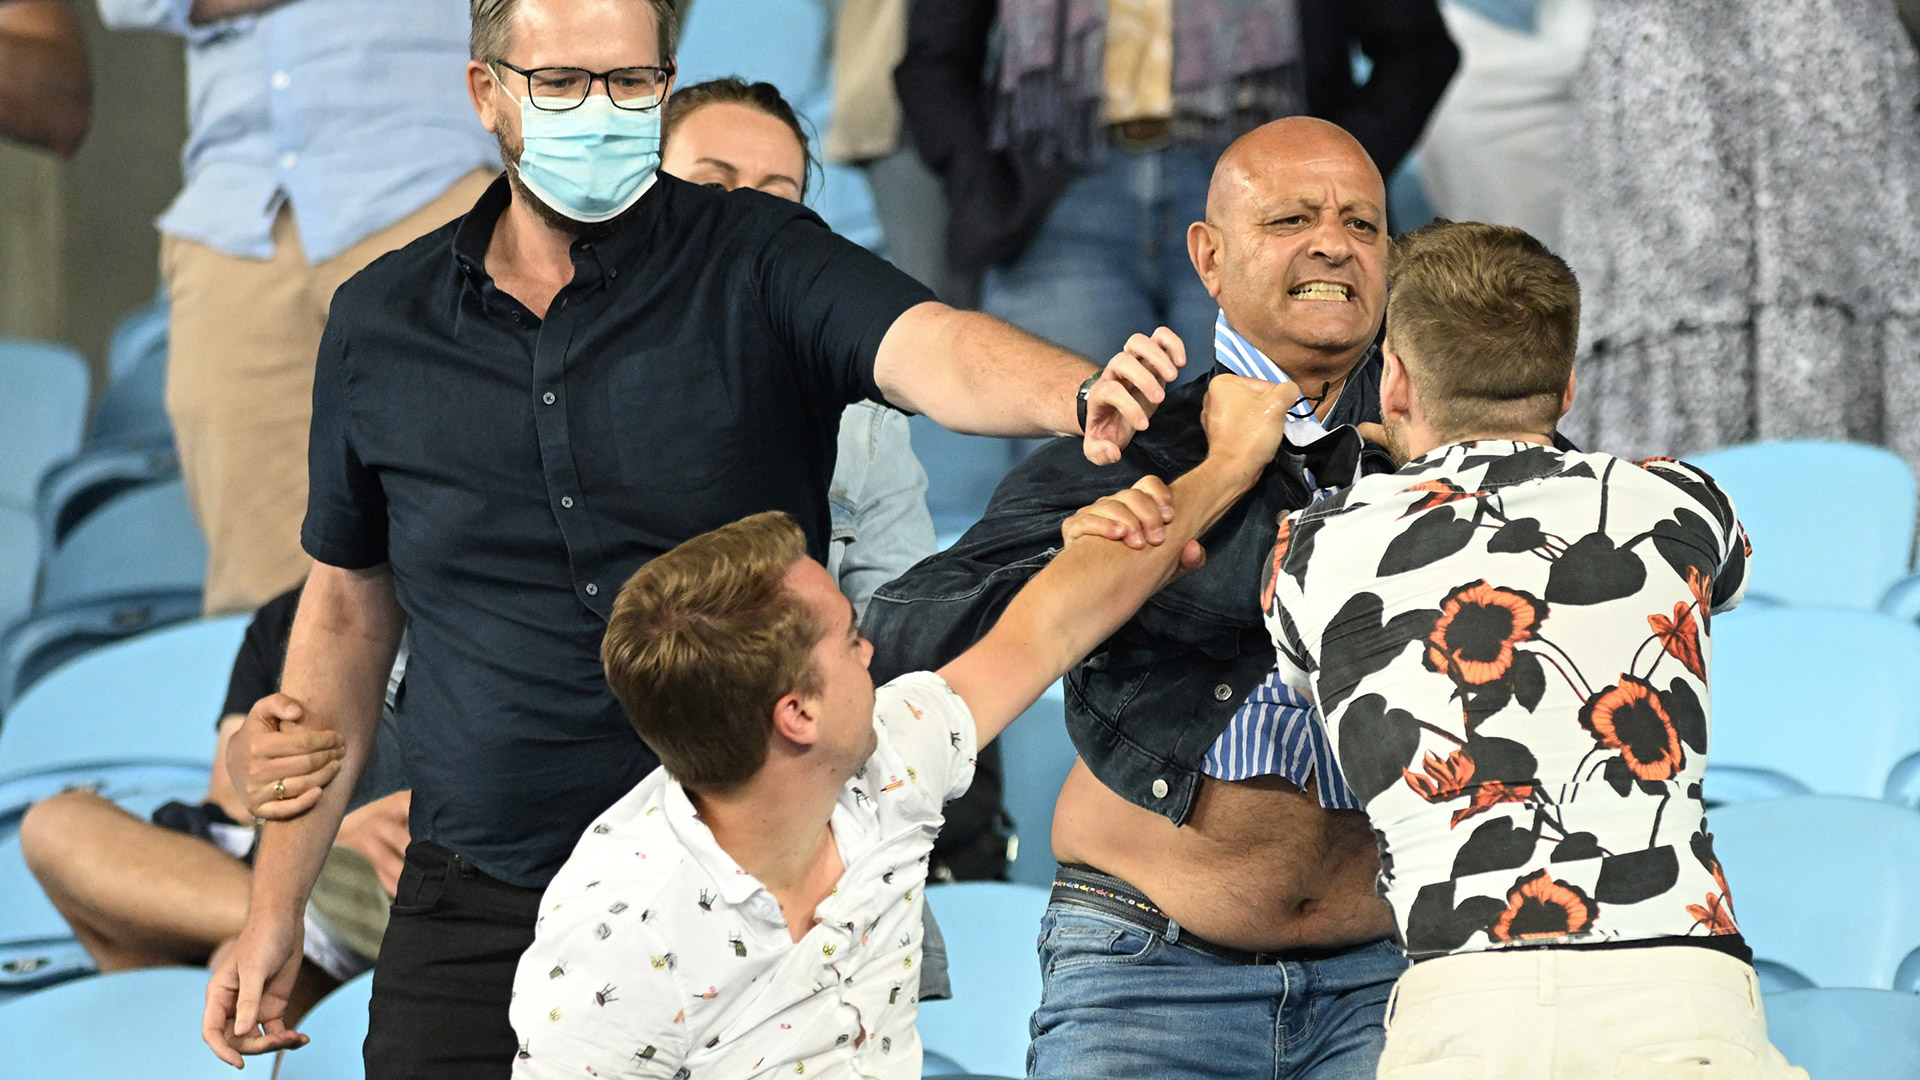 Los tres hombres sin mascarillas fueron expulsados del estadio (AFP)